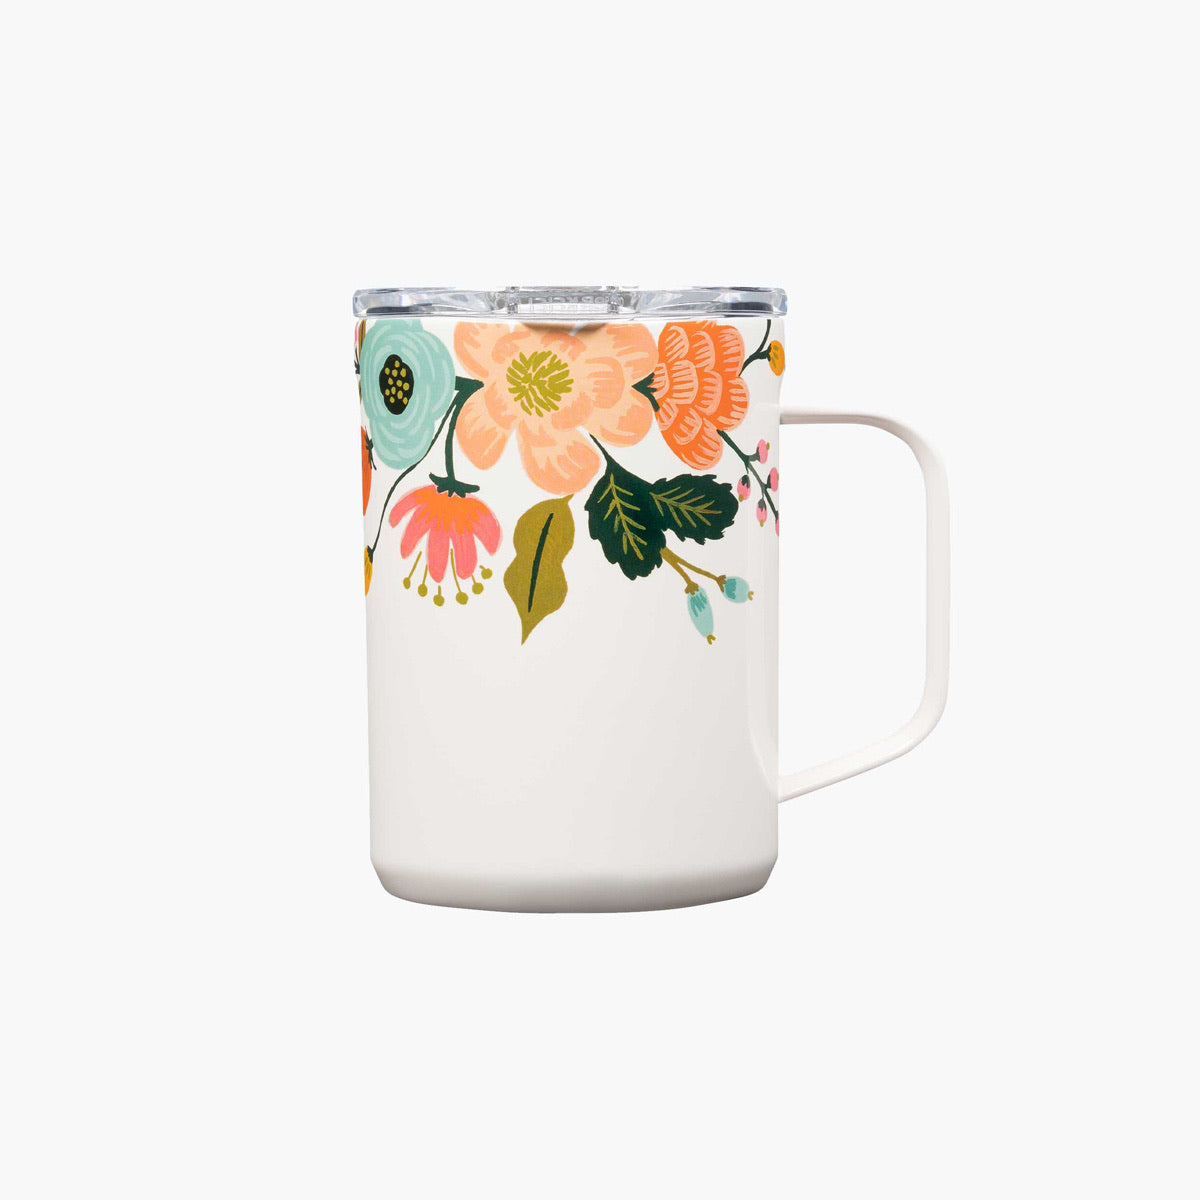 Corkcicle 16 oz Mug - Lively Floral